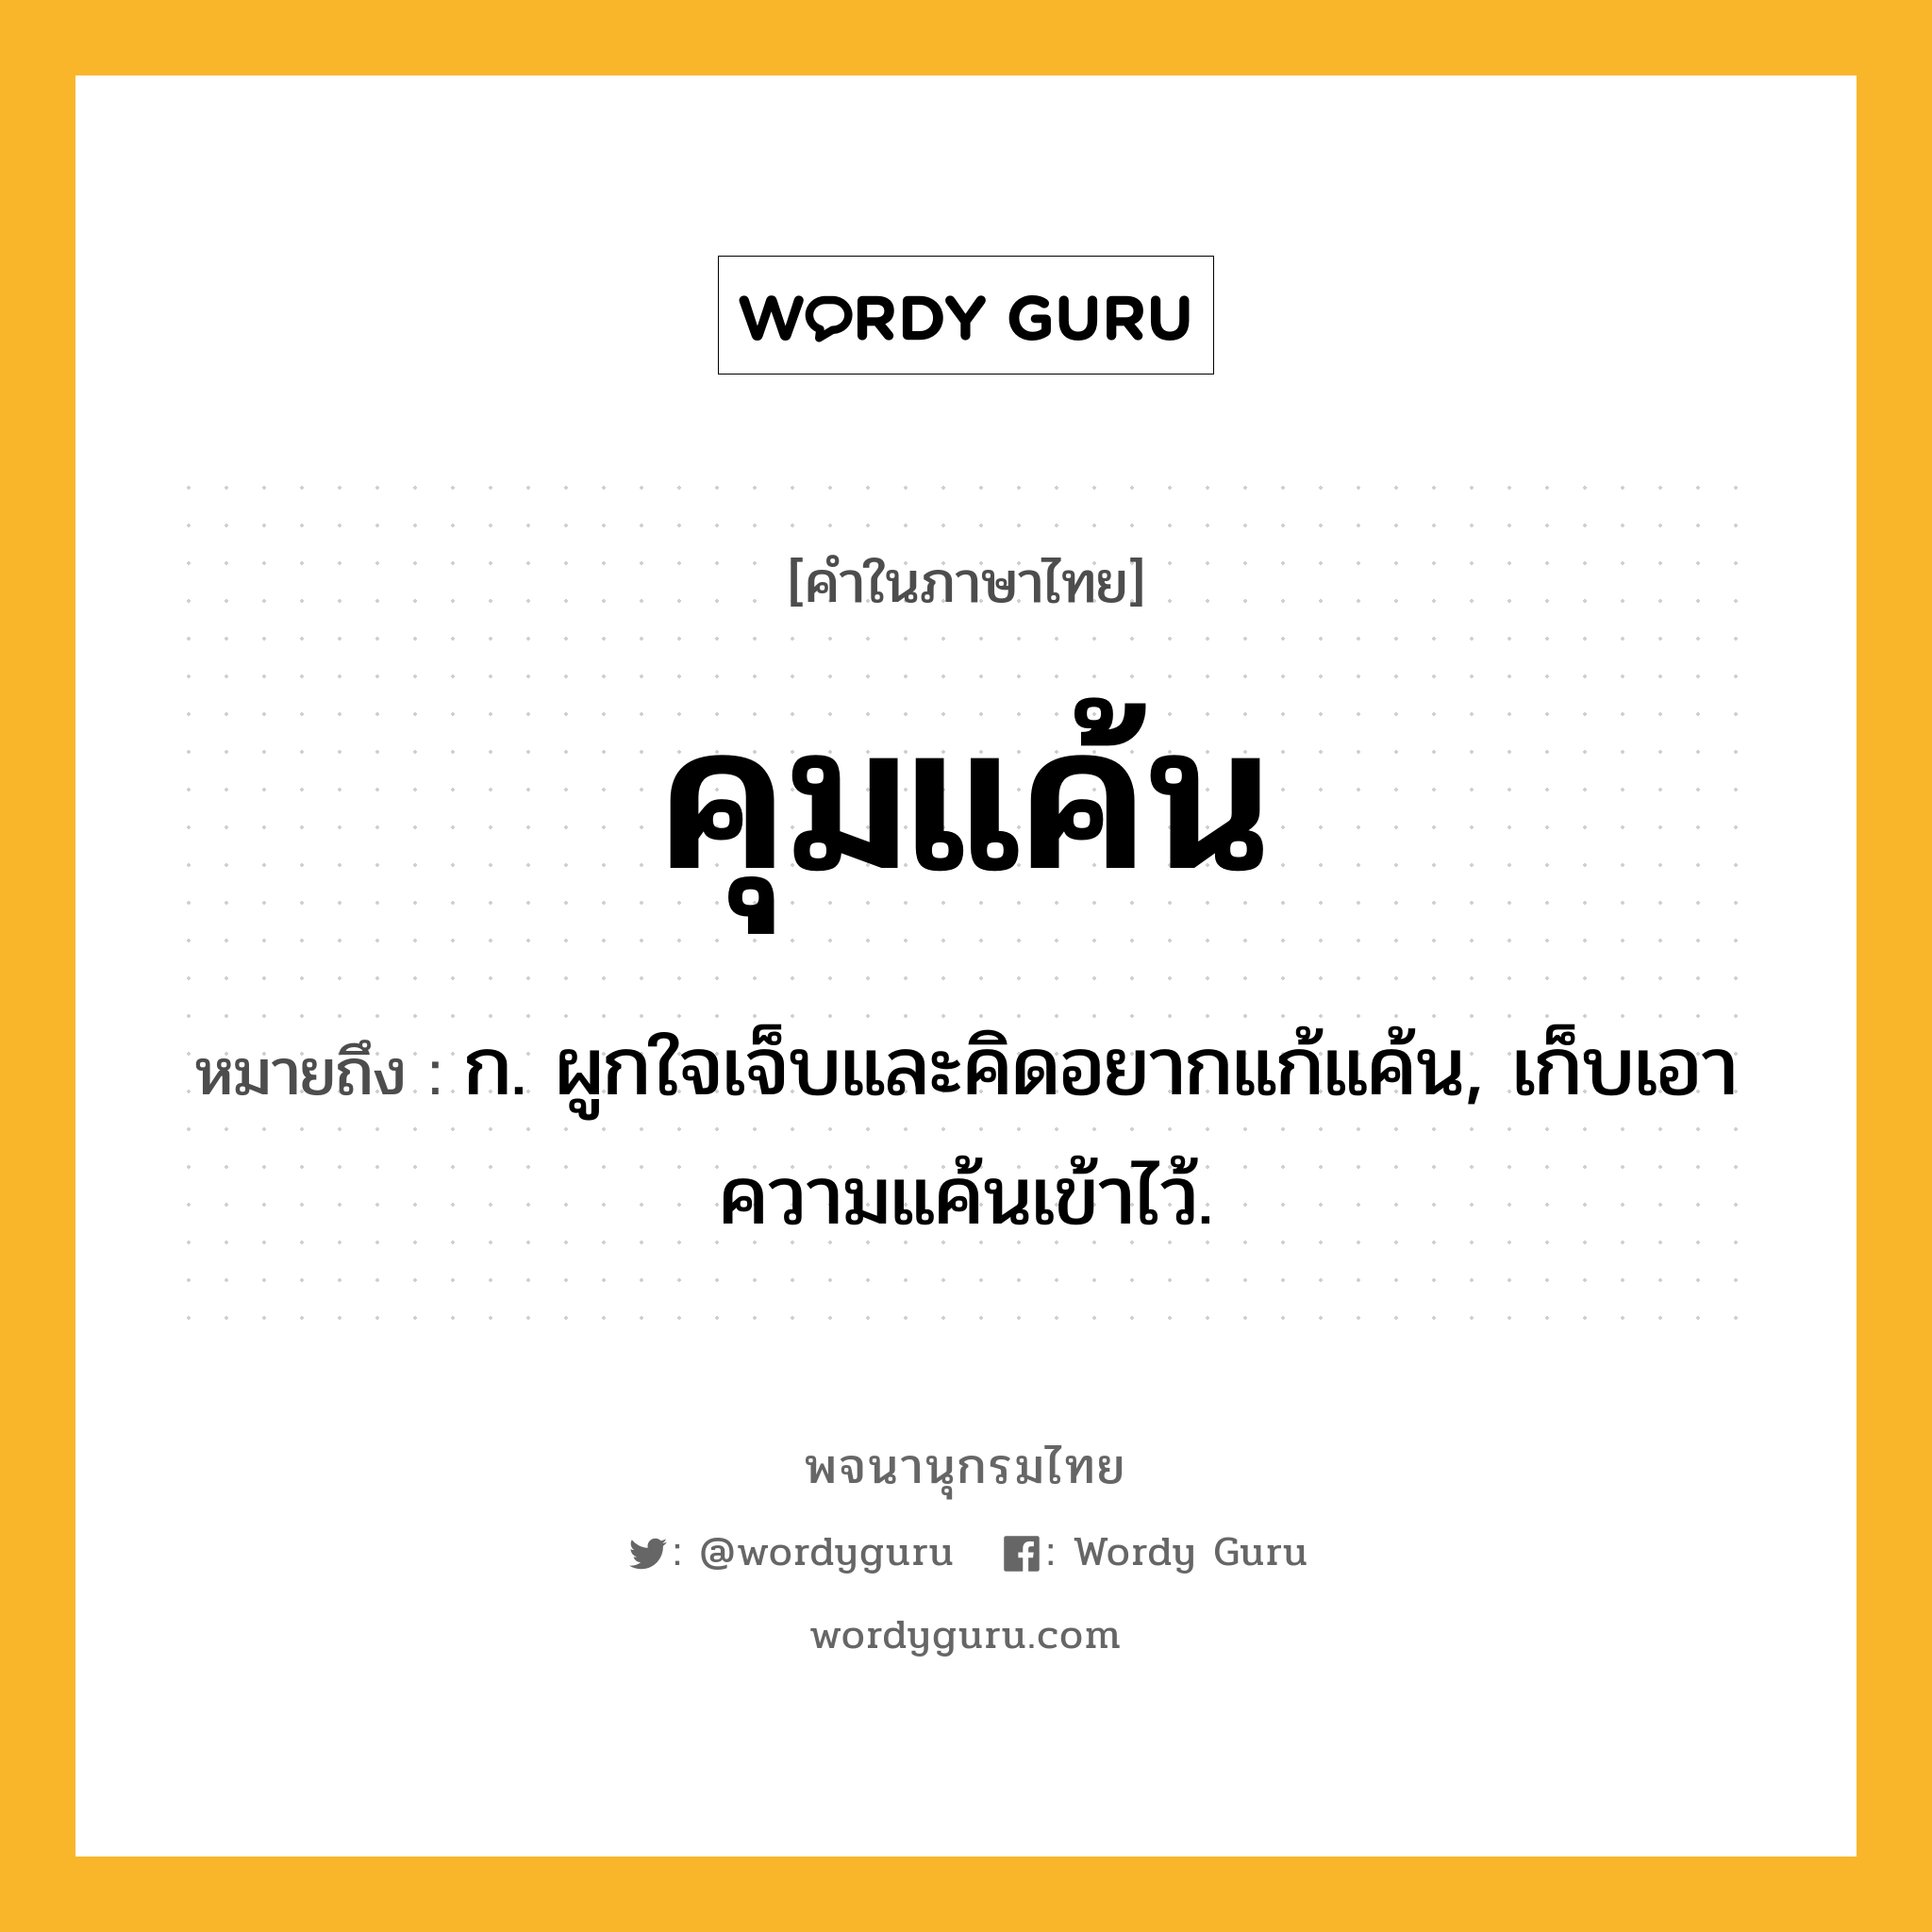 คุมแค้น หมายถึงอะไร?, คำในภาษาไทย คุมแค้น หมายถึง ก. ผูกใจเจ็บและคิดอยากแก้แค้น, เก็บเอาความแค้นเข้าไว้.